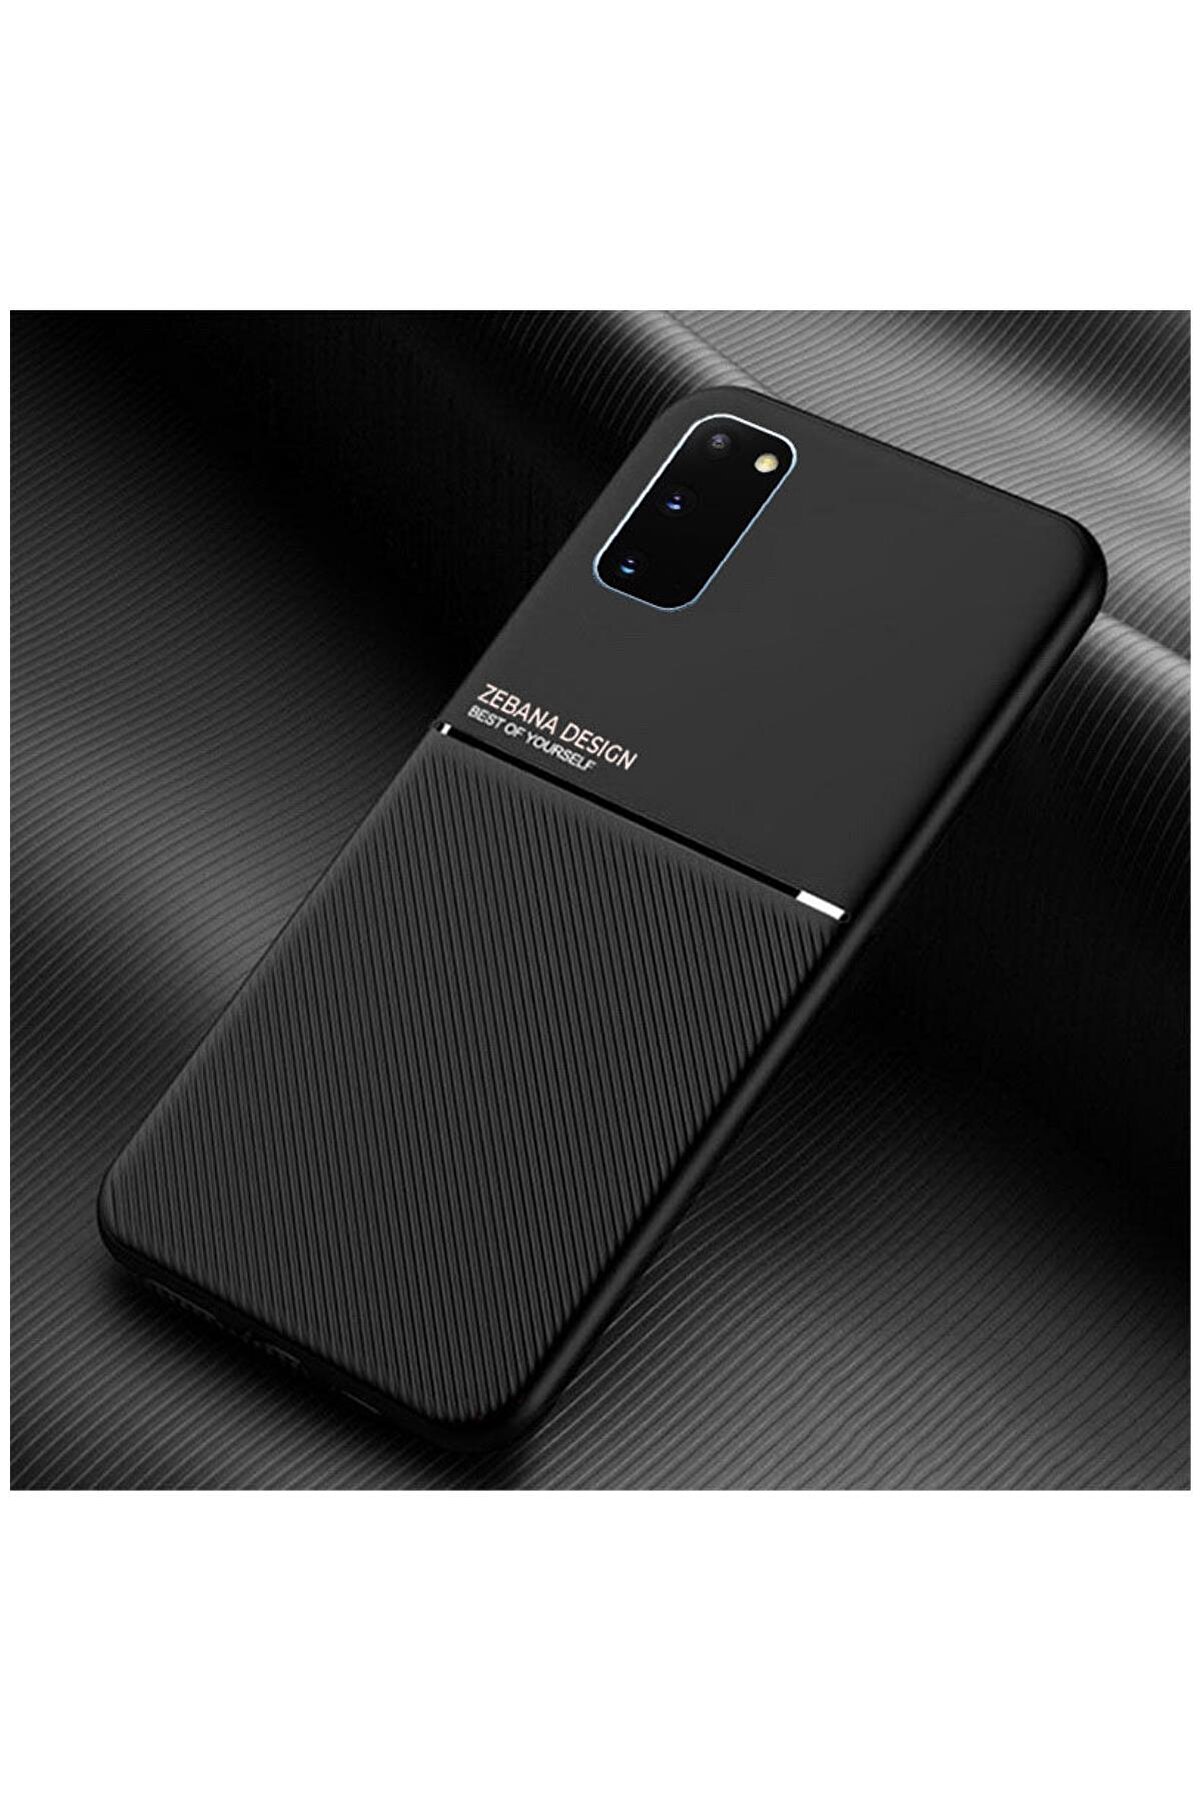 Zebana Samsung Galaxy S20 Fe Uyumlu Kılıf Design Silikon Kılıf Siyah